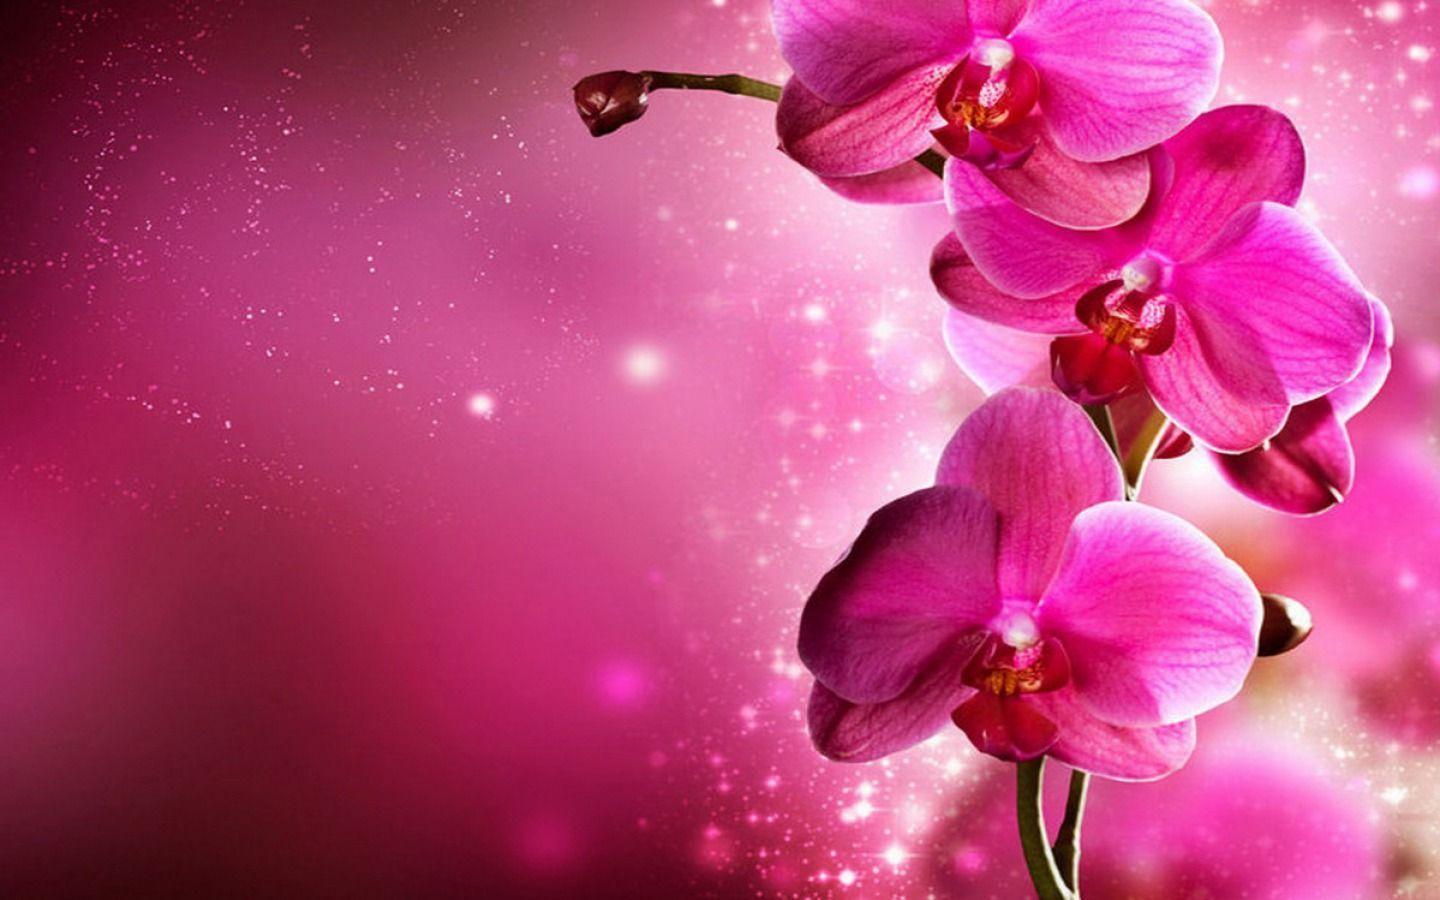 Orchid Flower: Hoa Lan là loài hoa quý giá, mang những giá trị thẩm mỹ tuyệt vời và ý nghĩa sâu sắc về tình yêu và sự hoàn hảo. Hình ảnh hoa Lan trong bức tranh là sự kết hợp tuyệt vời giữa màu sắc, hình dáng và sức sống. Hãy để hình ảnh hoa Lan trở thành nguồn cảm hứng tỏa sáng cho tâm hồn bạn.